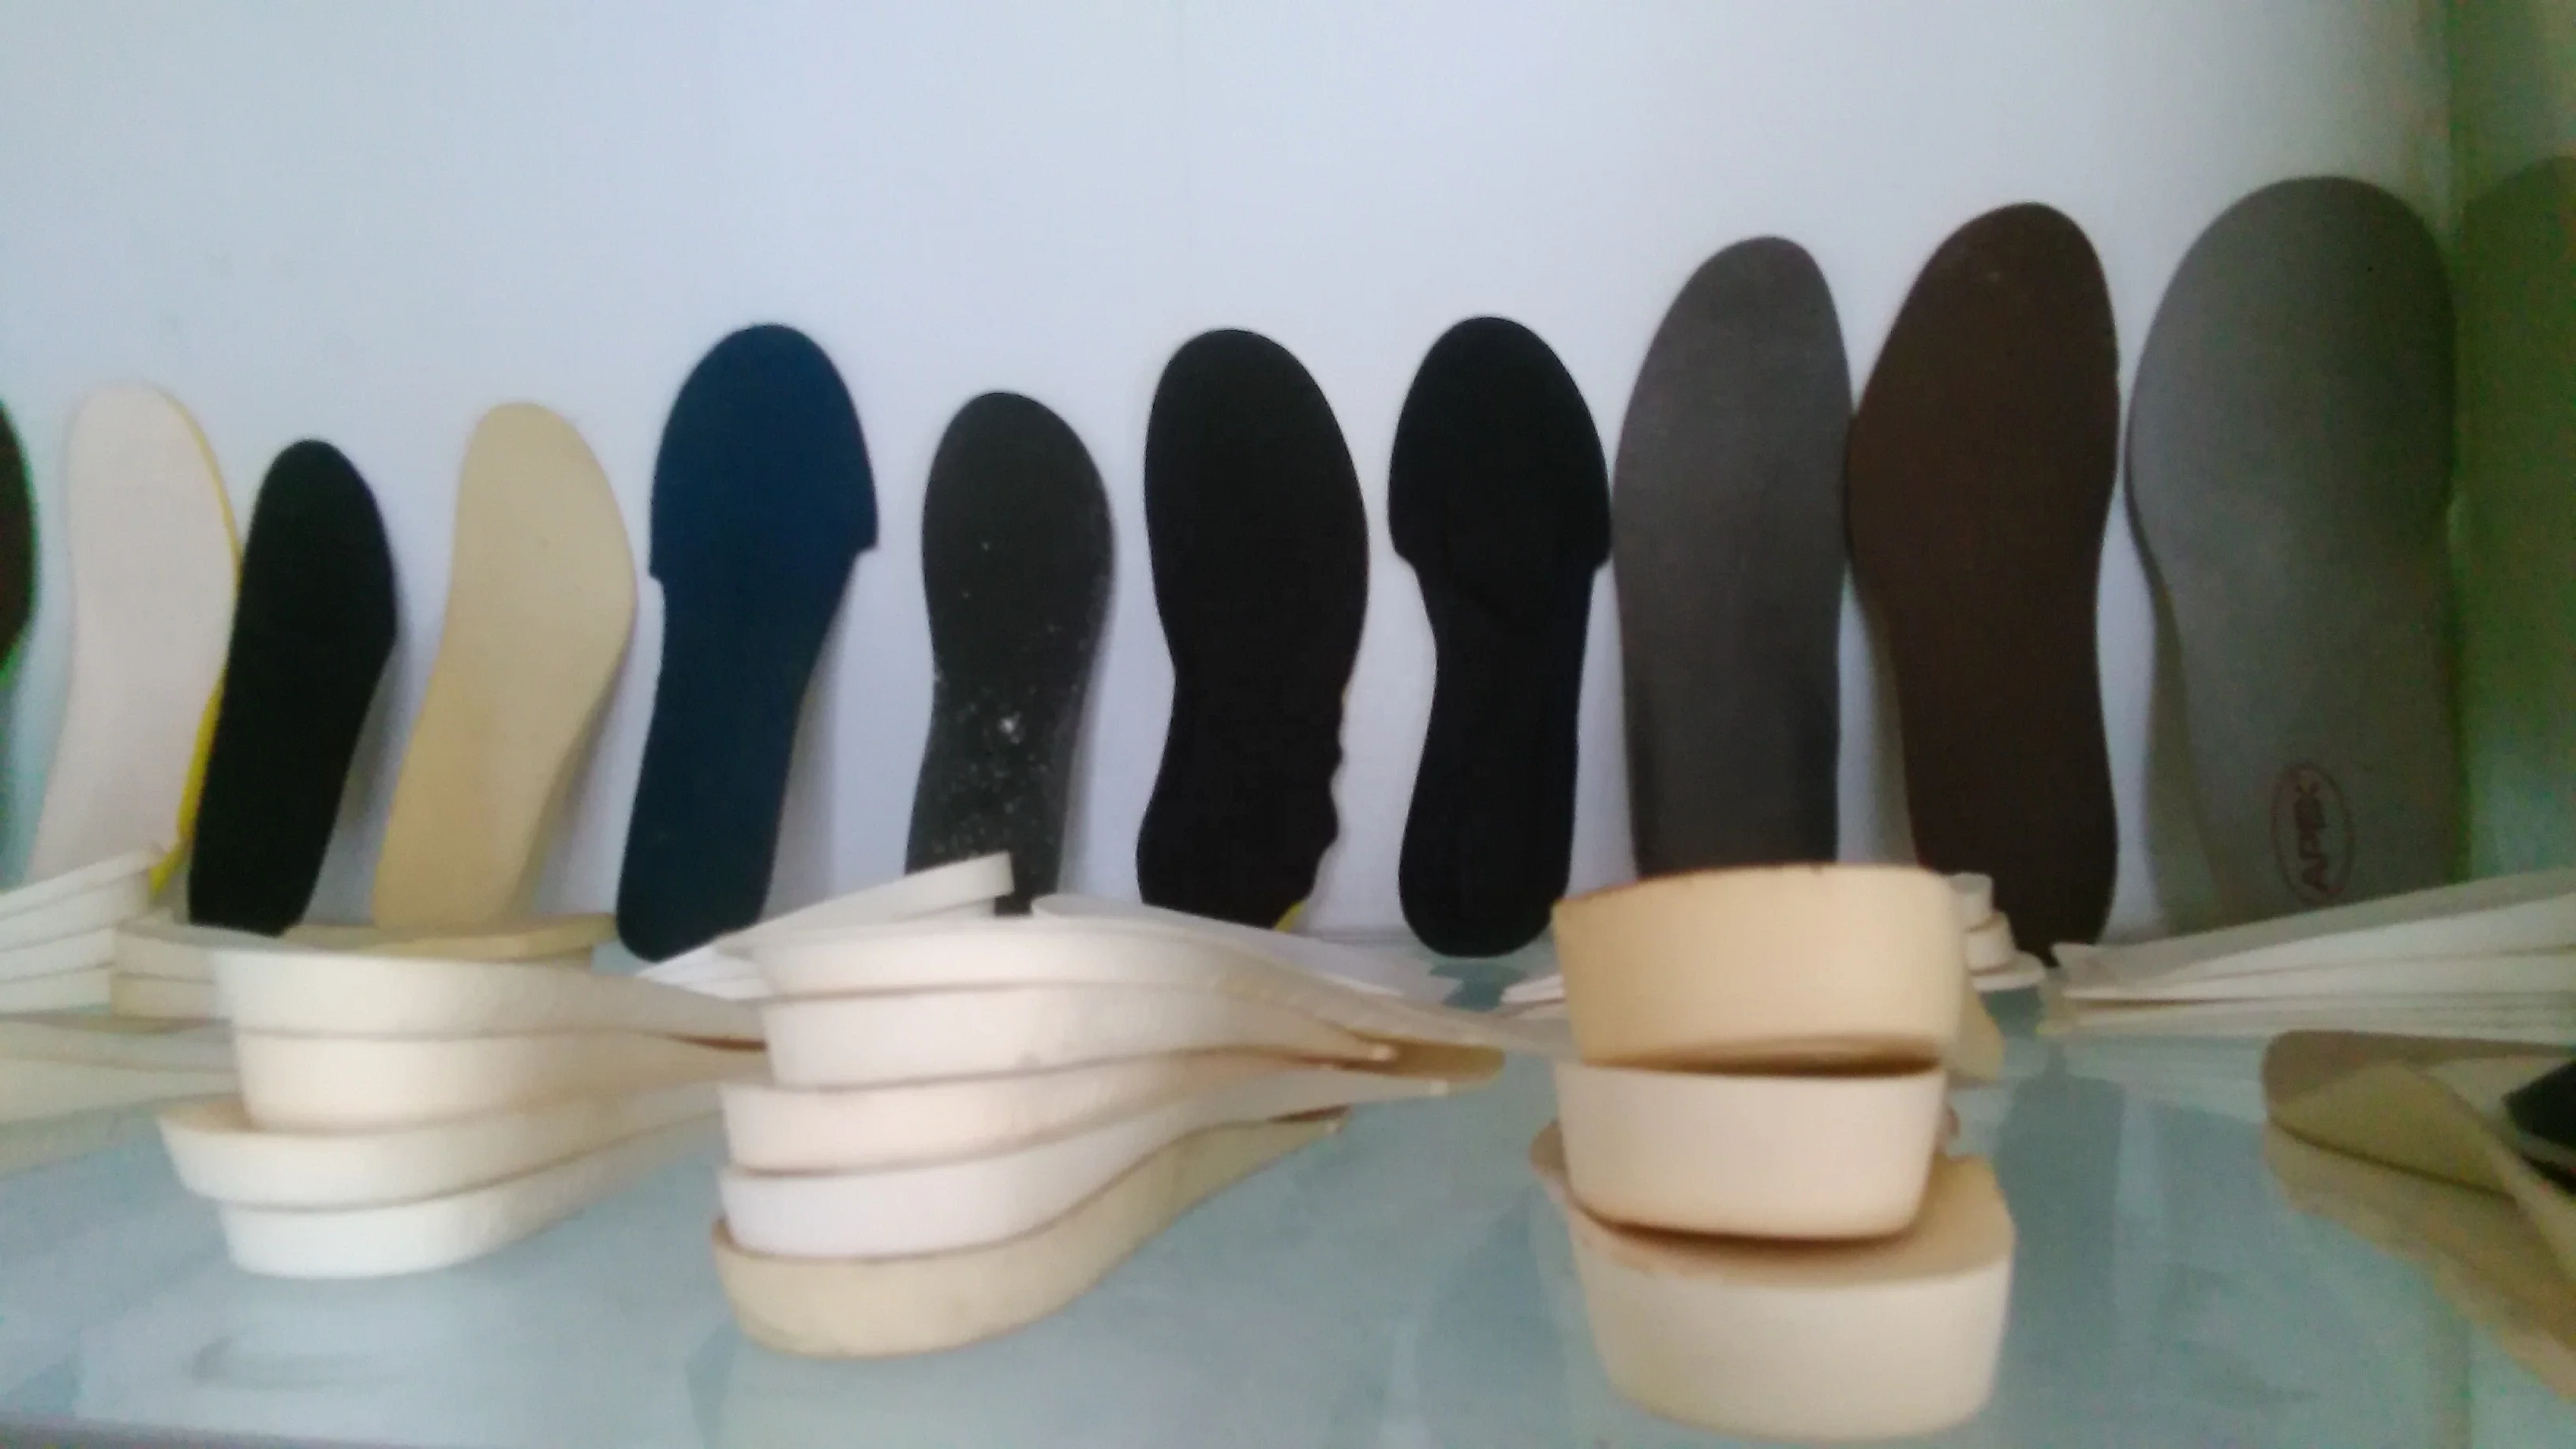 Изготовление обуви